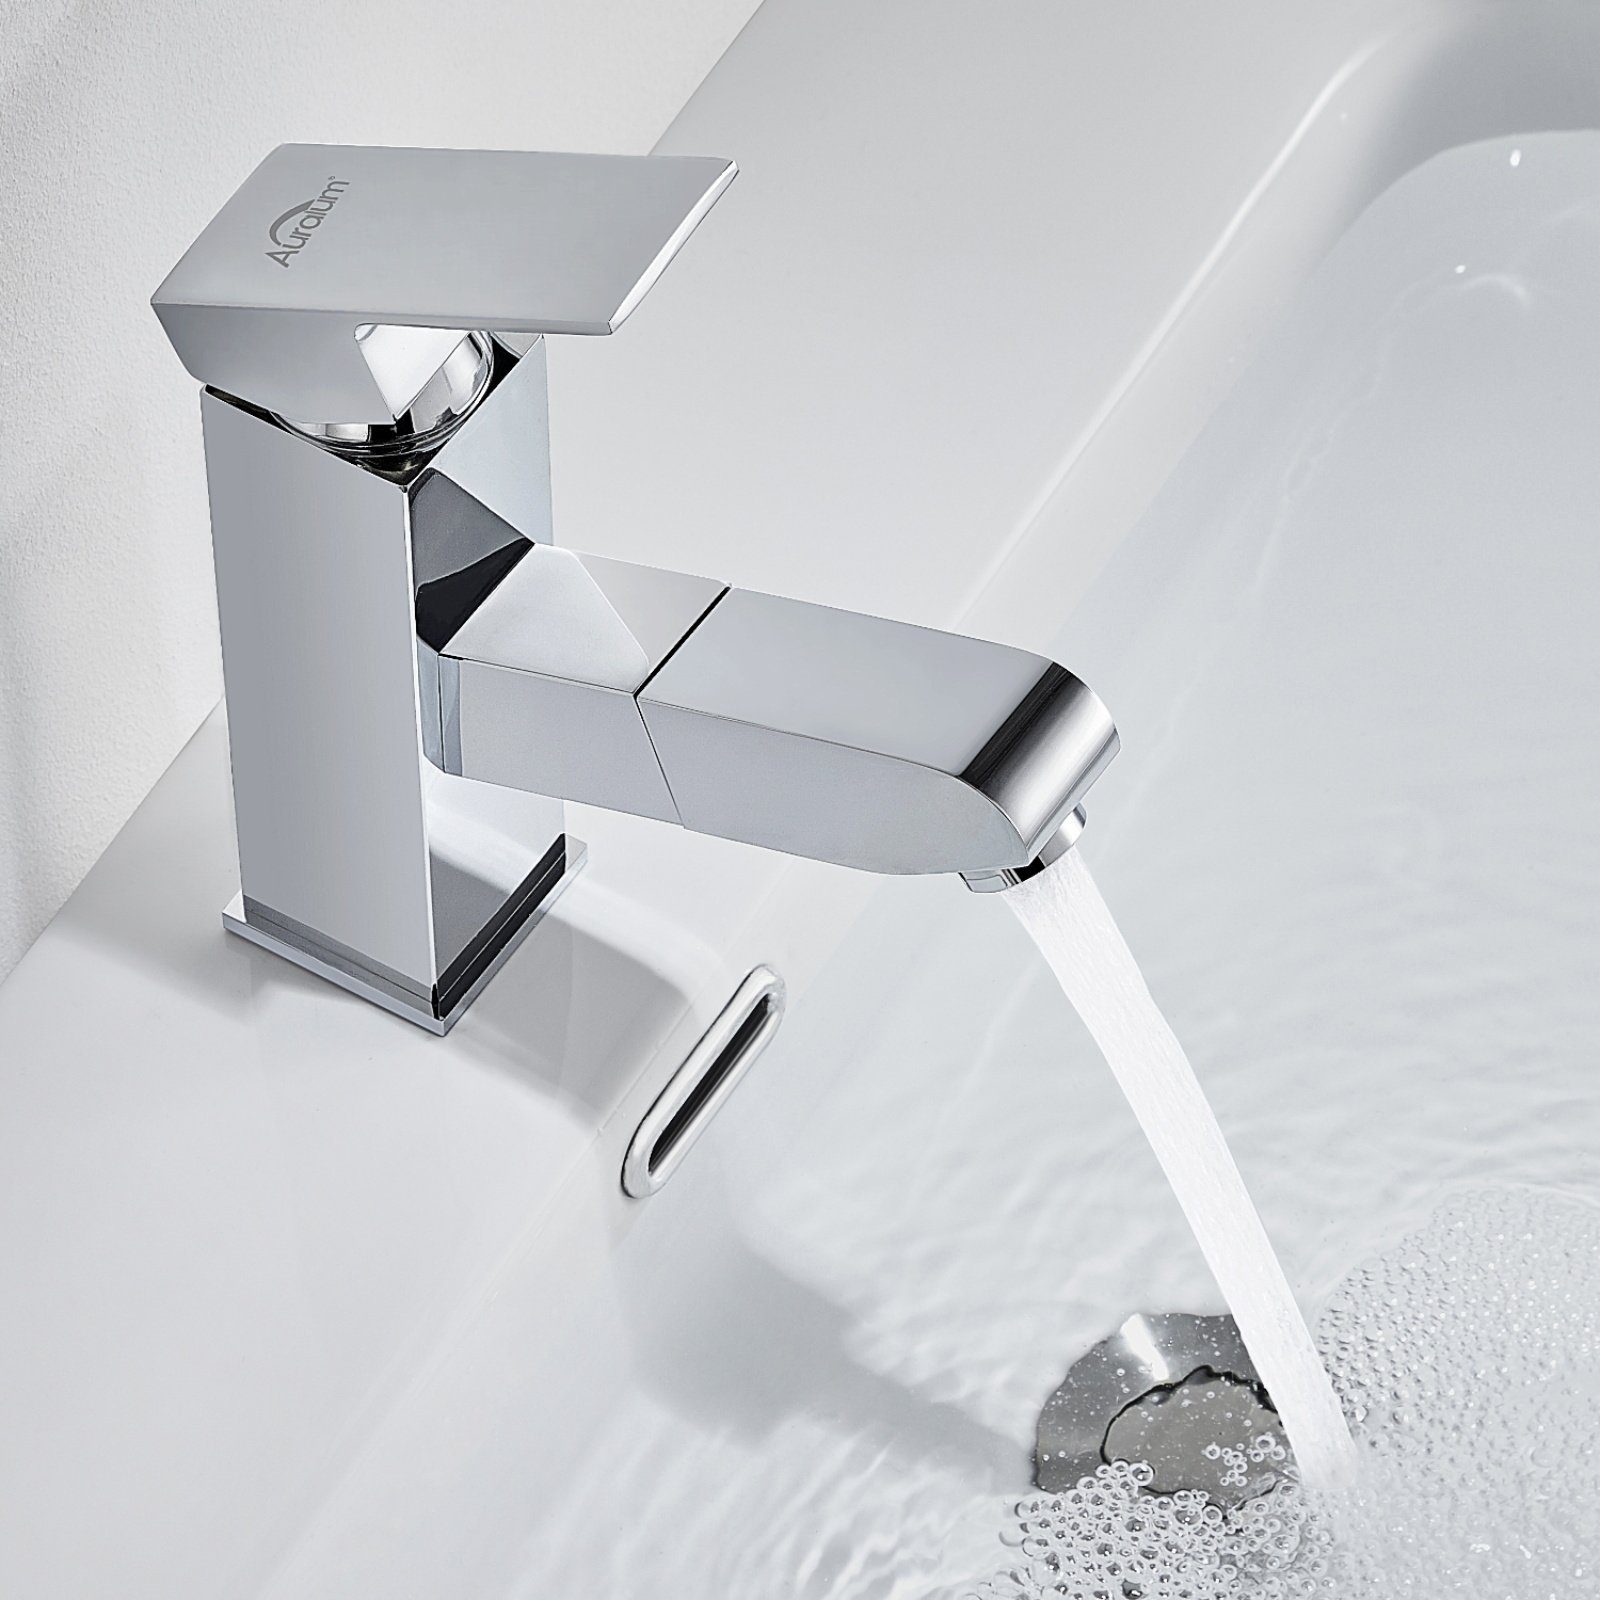 Auralum Waschtischarmatur Waschbecken Brause Wasserhahn mit Silber Badarmatur Mischbatterie Ausziehbar